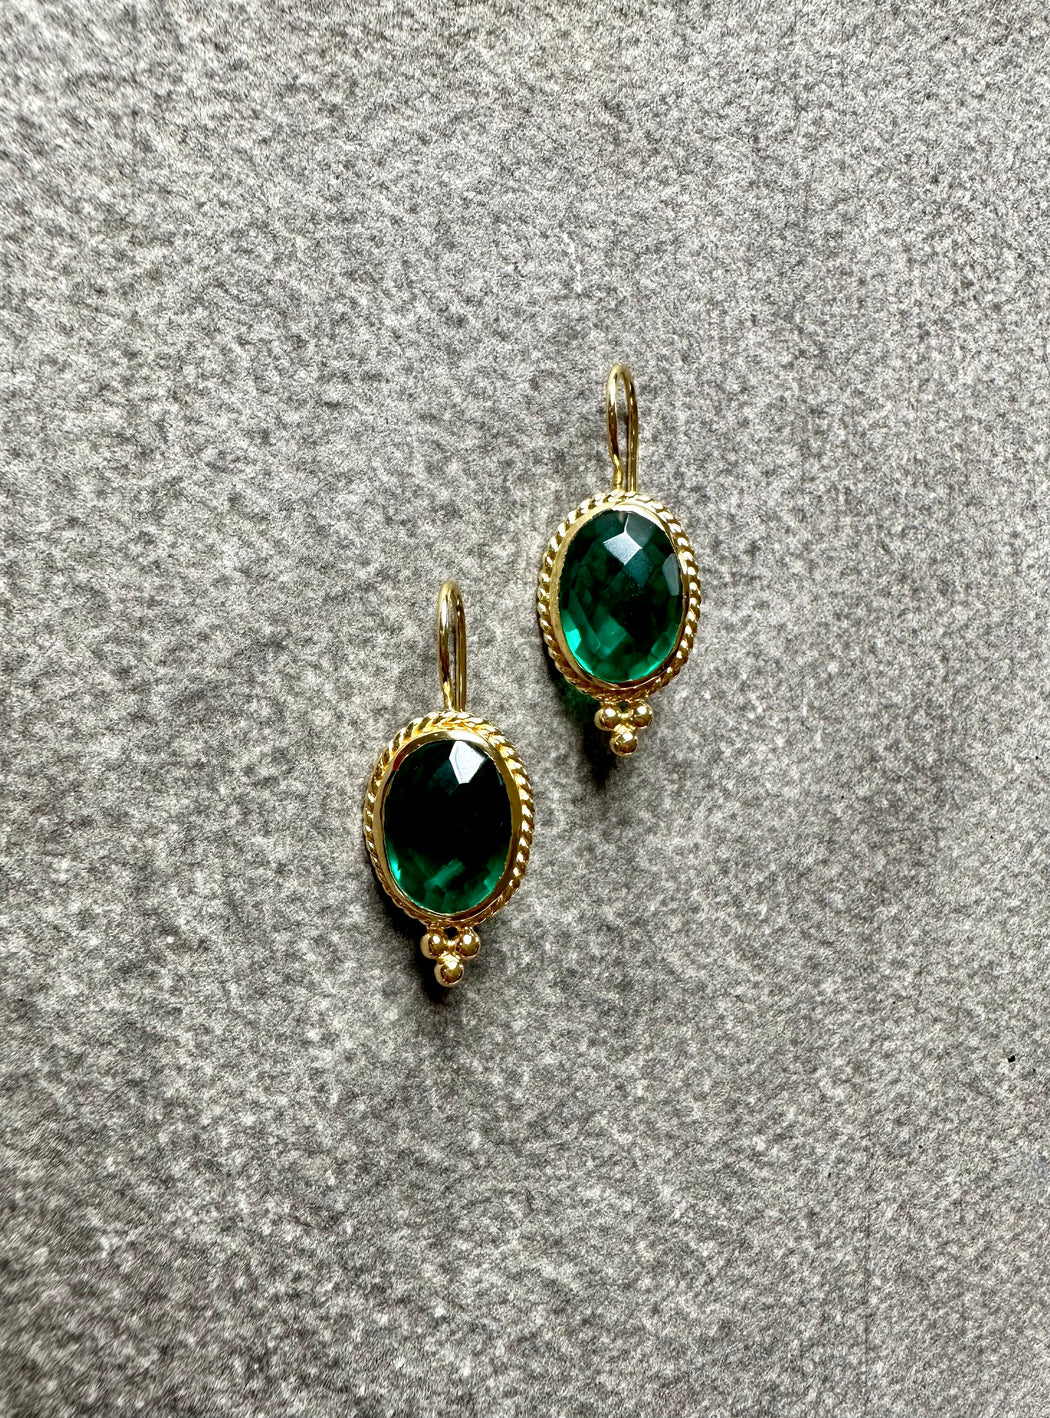 Green Tourmaline "Oval" Drop Earrings